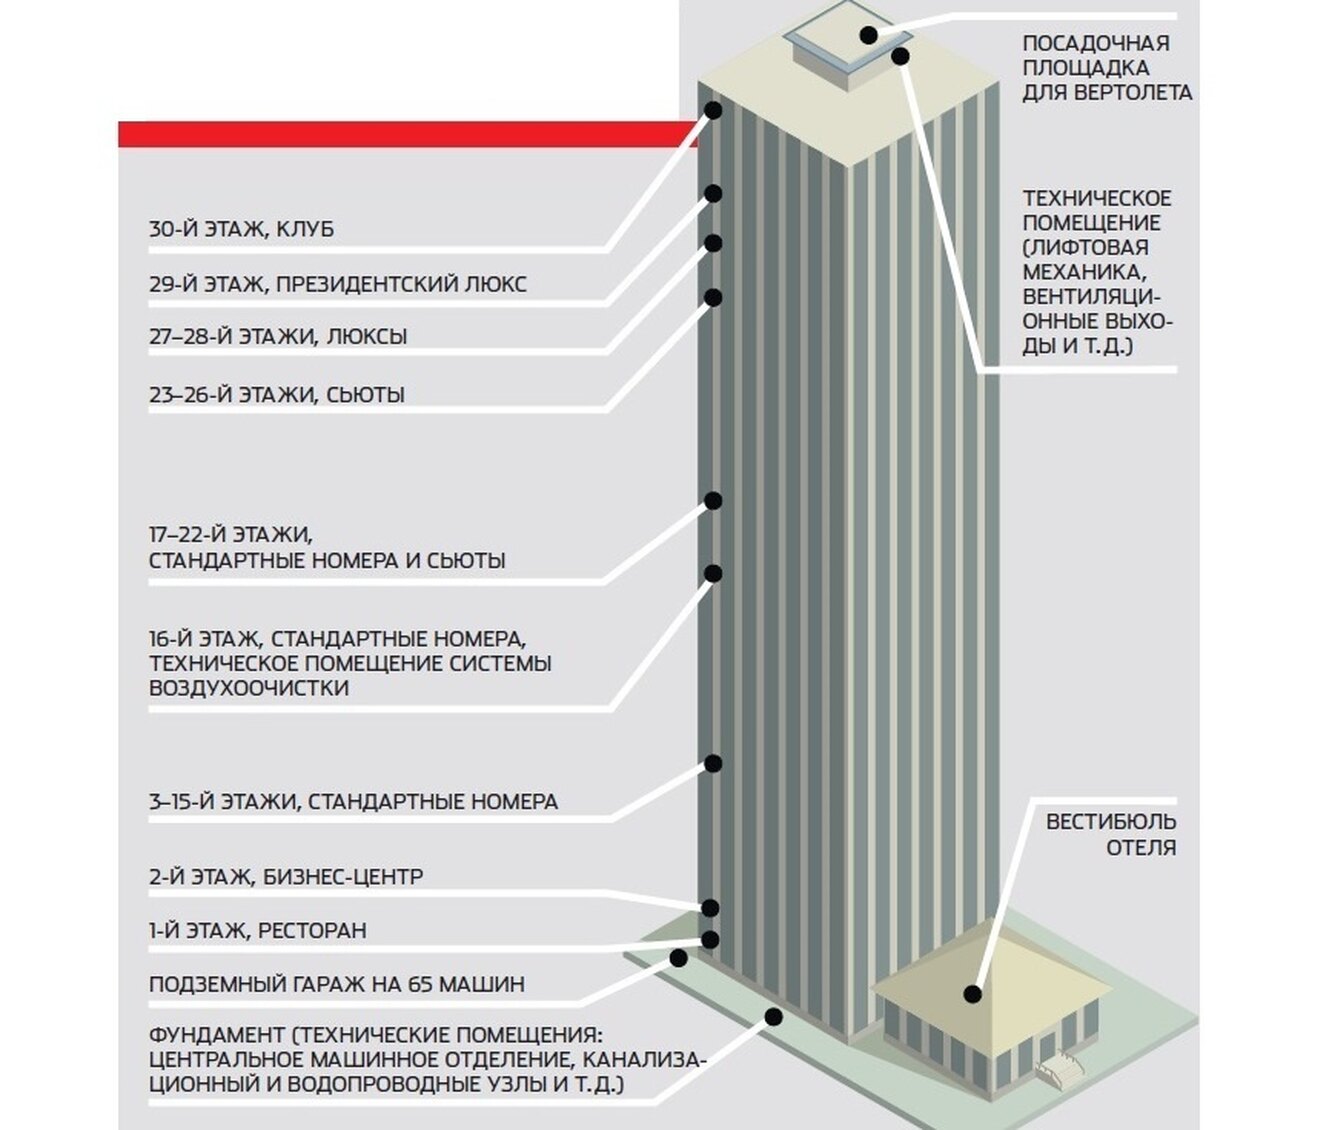 30-этажный дом за 360 часов: китайская революция здания, часов, Broad, значительно, всего, компании, отеля, землетрясения, здание, конструкций, практически, более, сейсмостойкость, можно, фильтр, отель, позволяет, плиты, установки, энергоэффективность